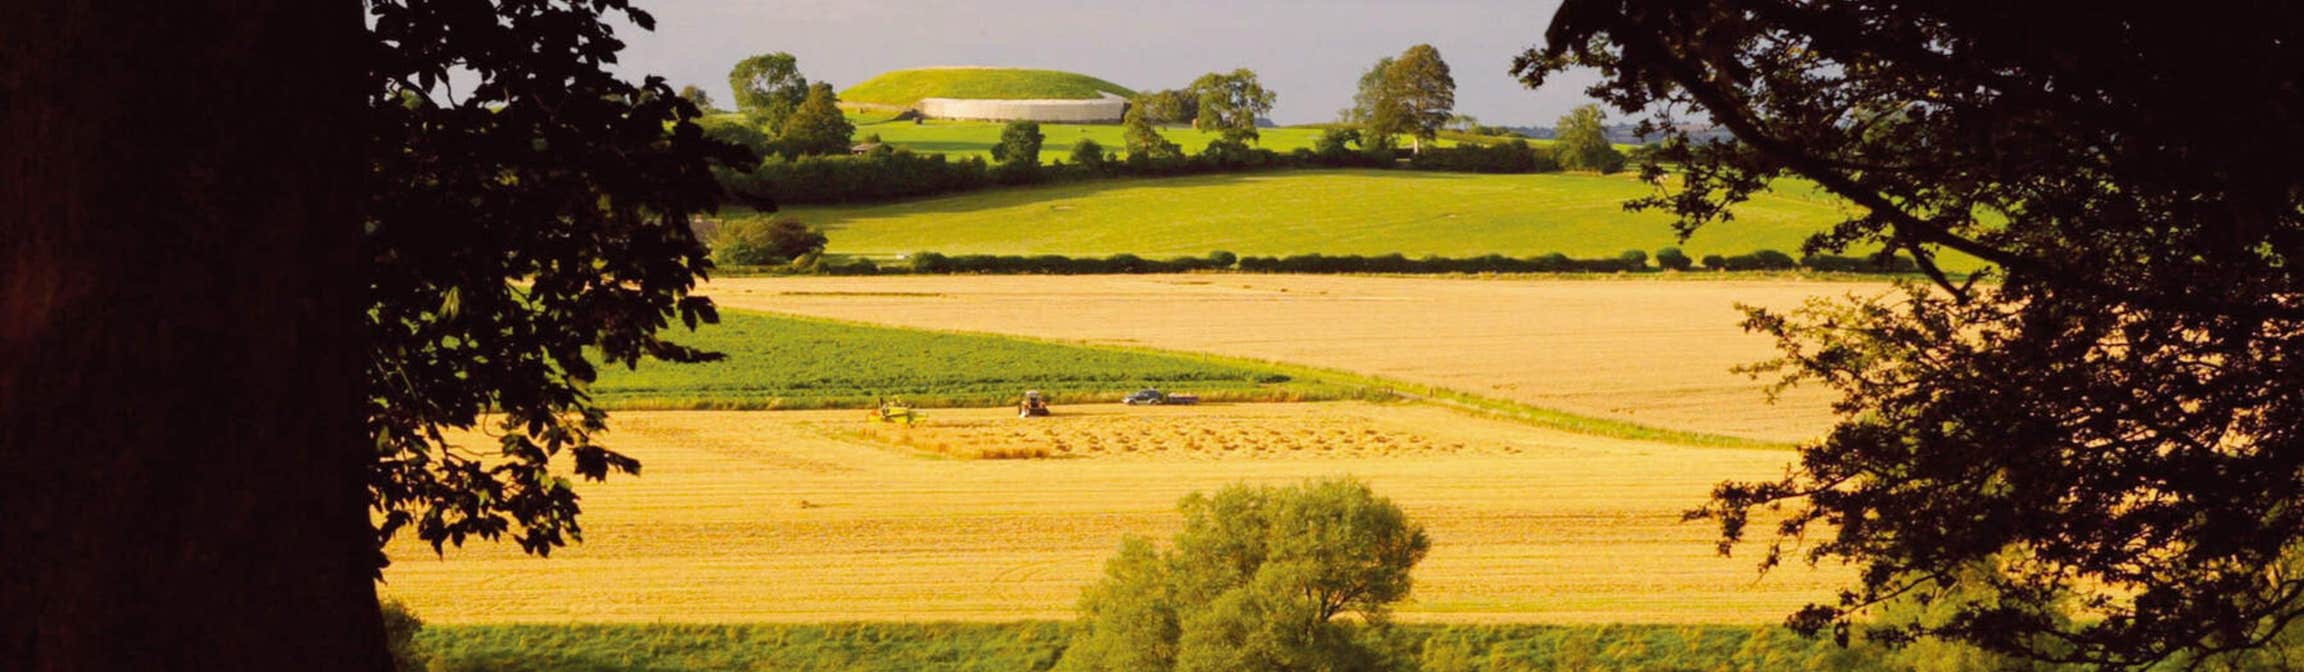 Field in Newgrange, County Meath